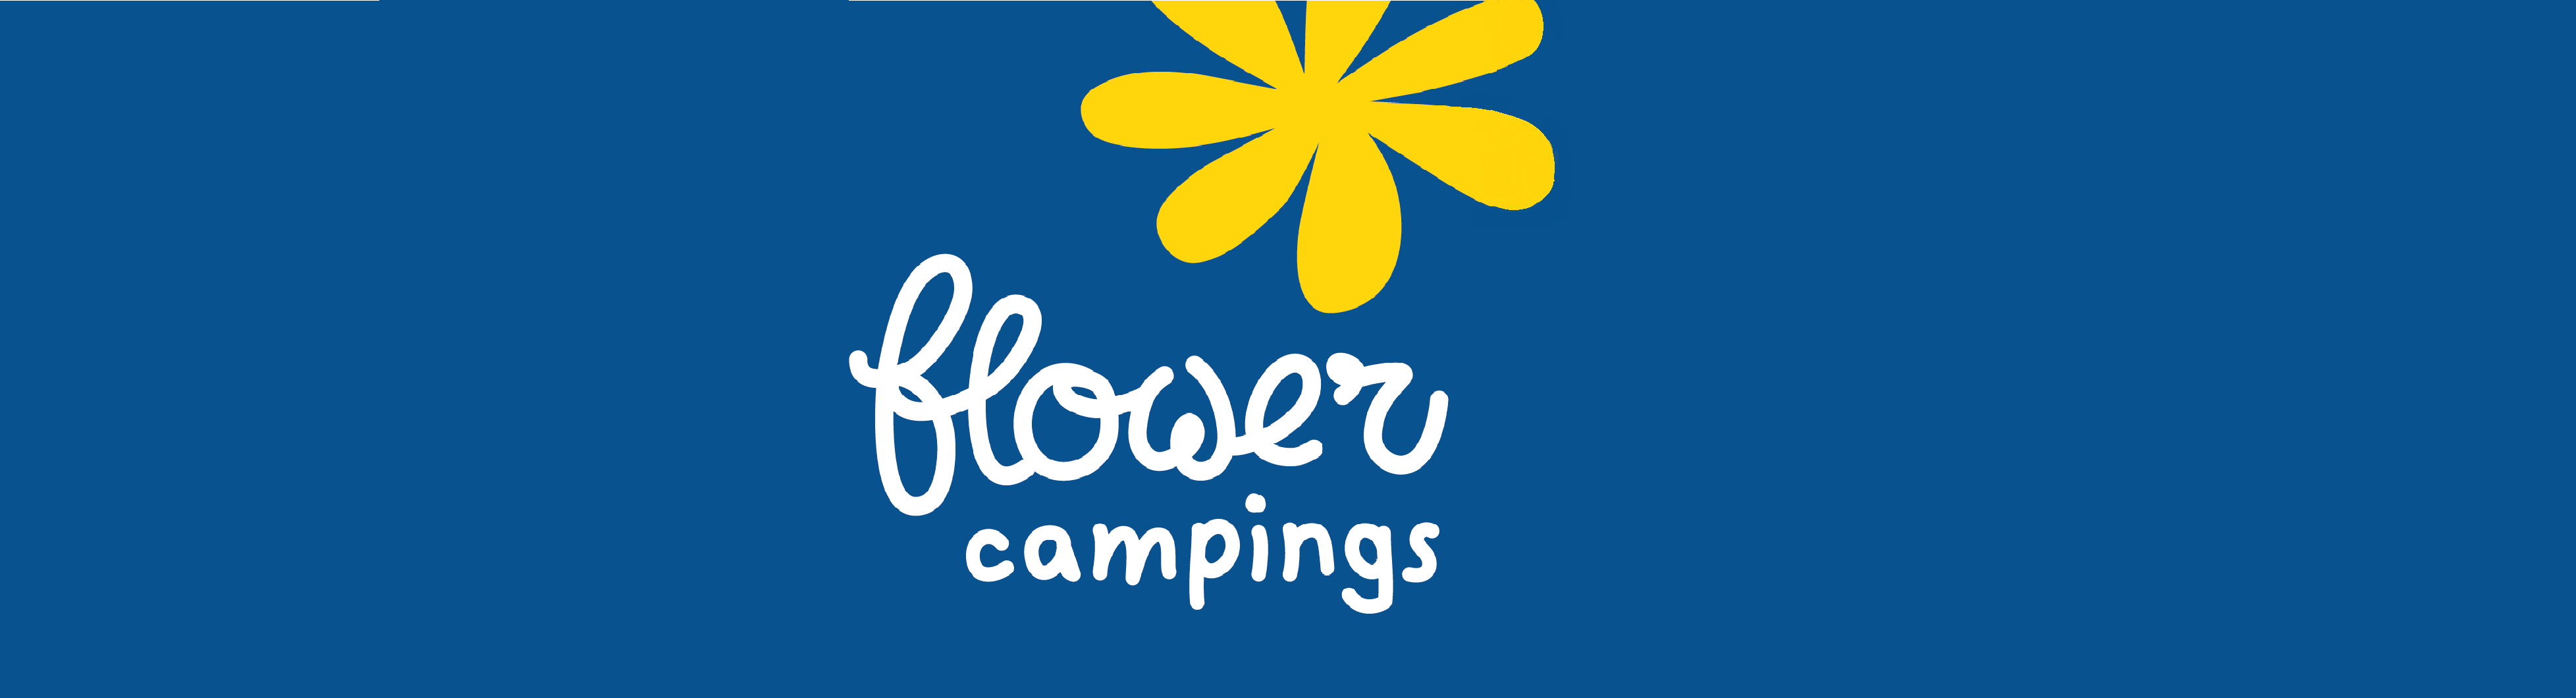 flower campings